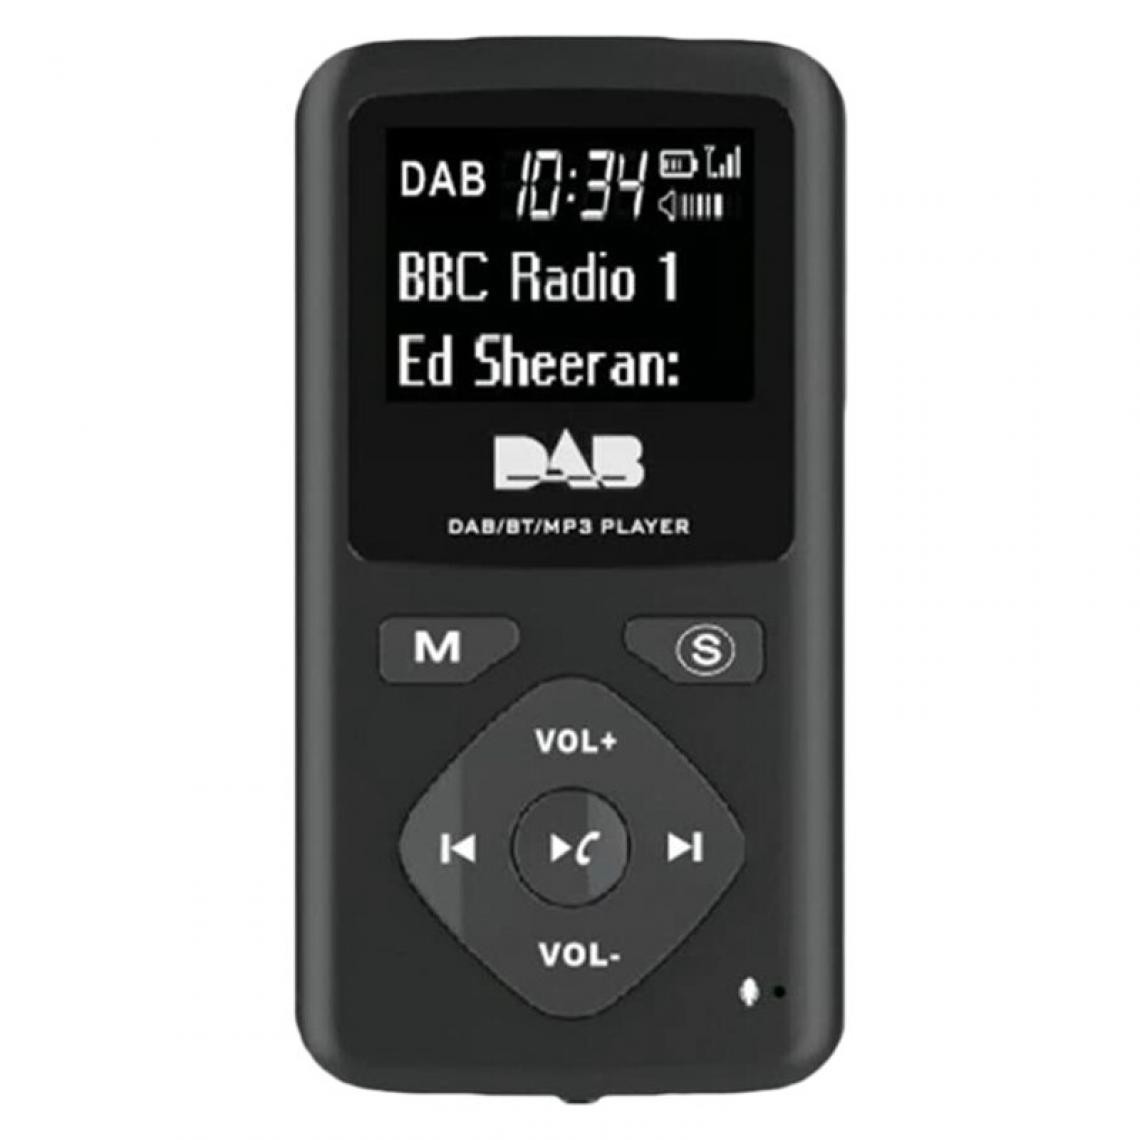 Universal - Radio numérique Bluetooth 4.0 Poche personnelle FM mini casque radio portable MP3 micro USB pour la page d'accueil |(Le noir) - Radio